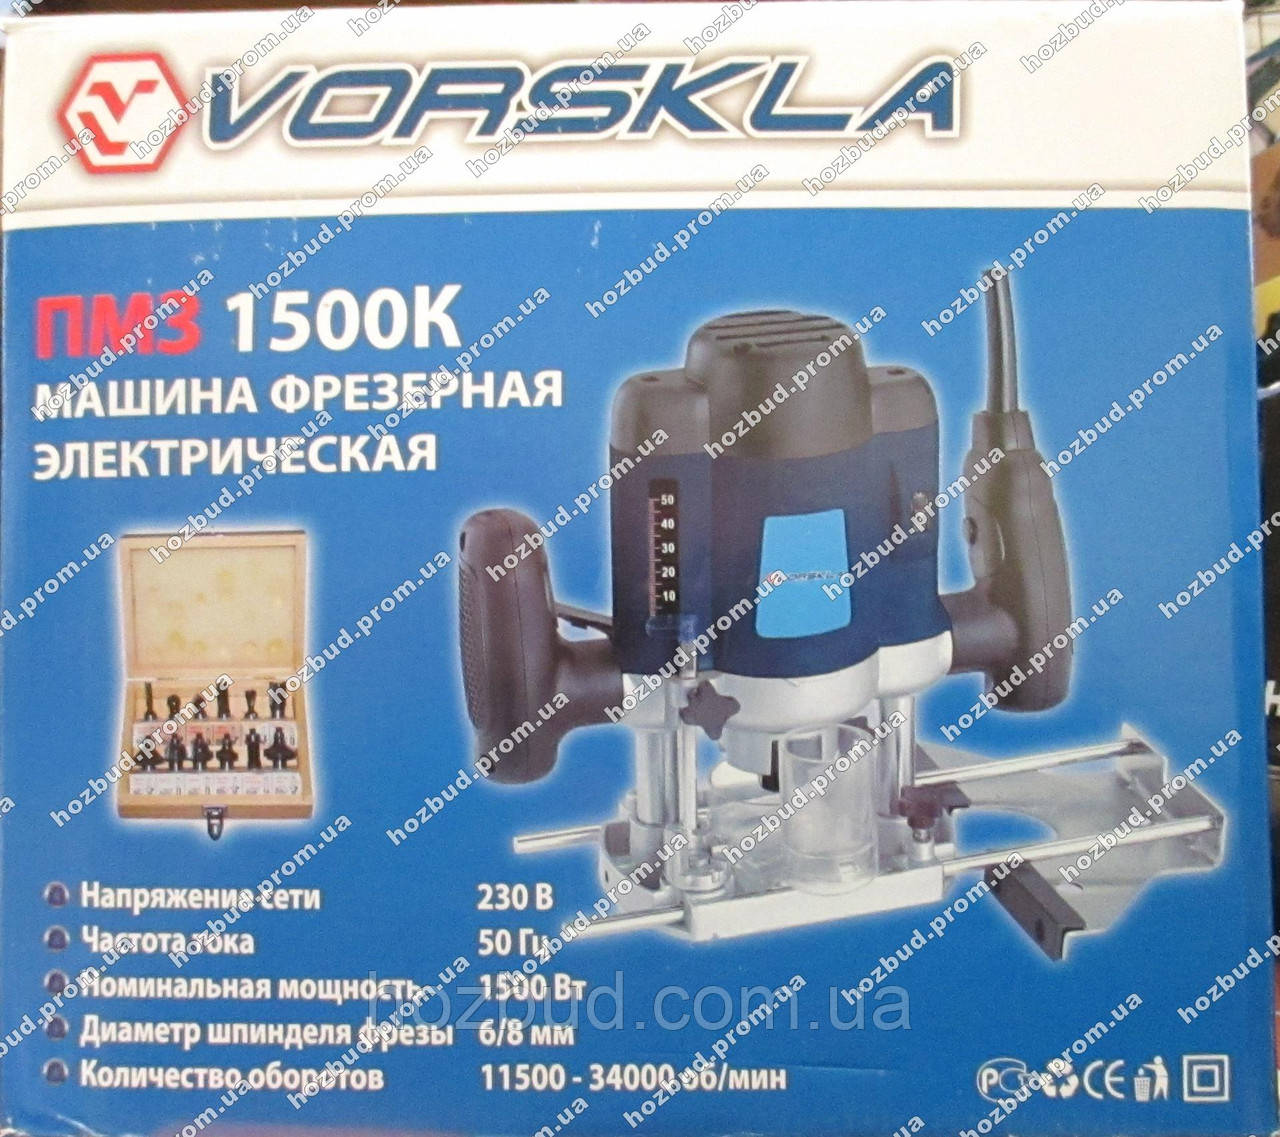 Фрезер VORSKLA ПМЗ 1500К